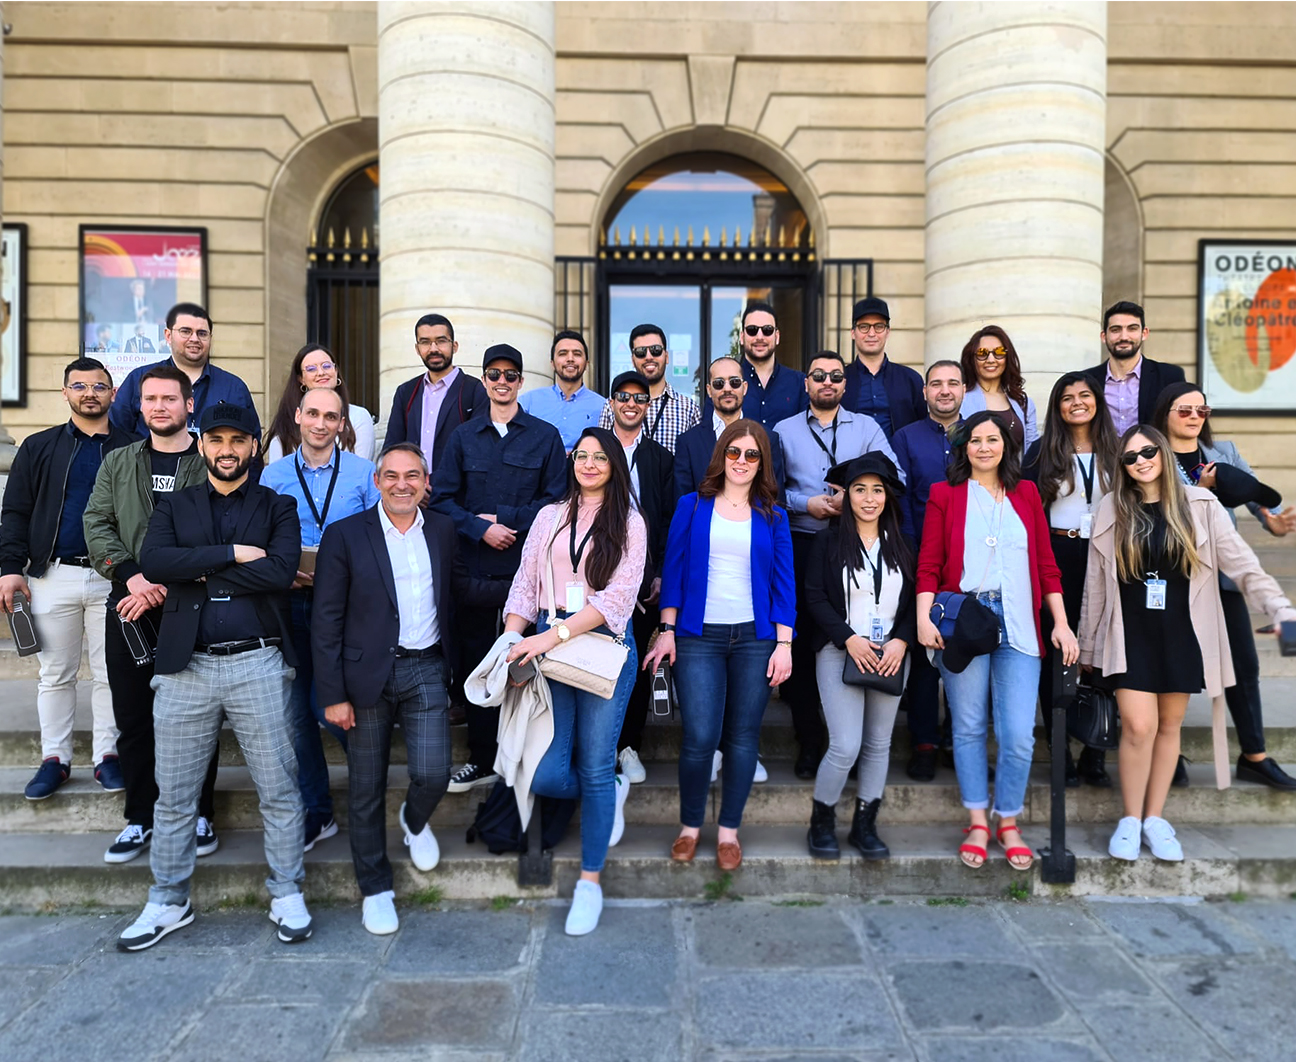 Photographie de groupe en couleur, qui montre 26 salariés de l’entreprise TECOS alignés, devant le théâtre de l’Odéon à Paris